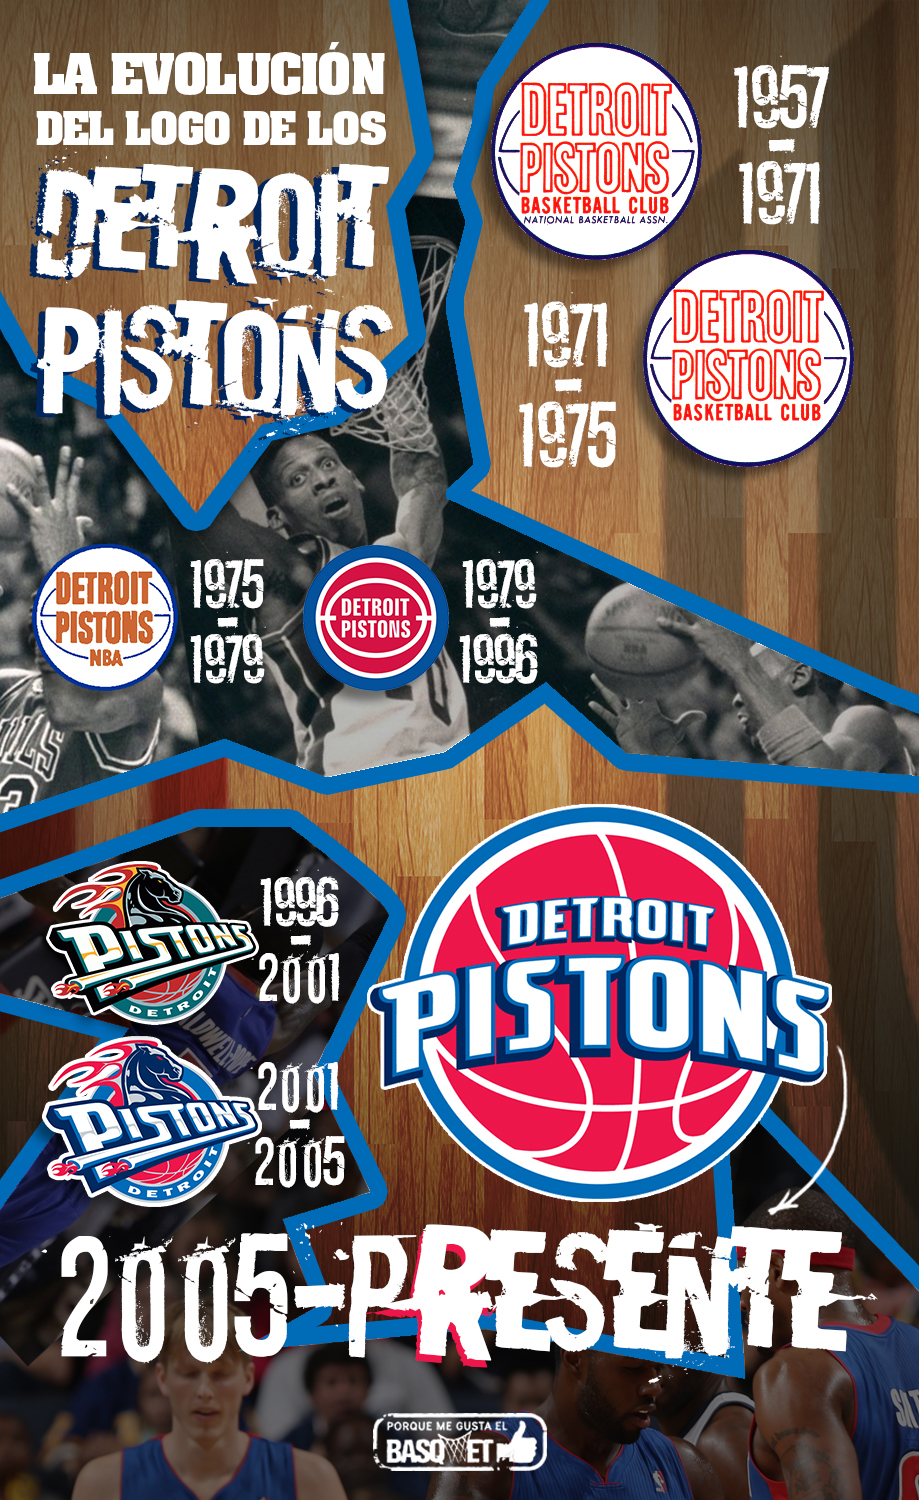 La evolución del logo de los Pistons